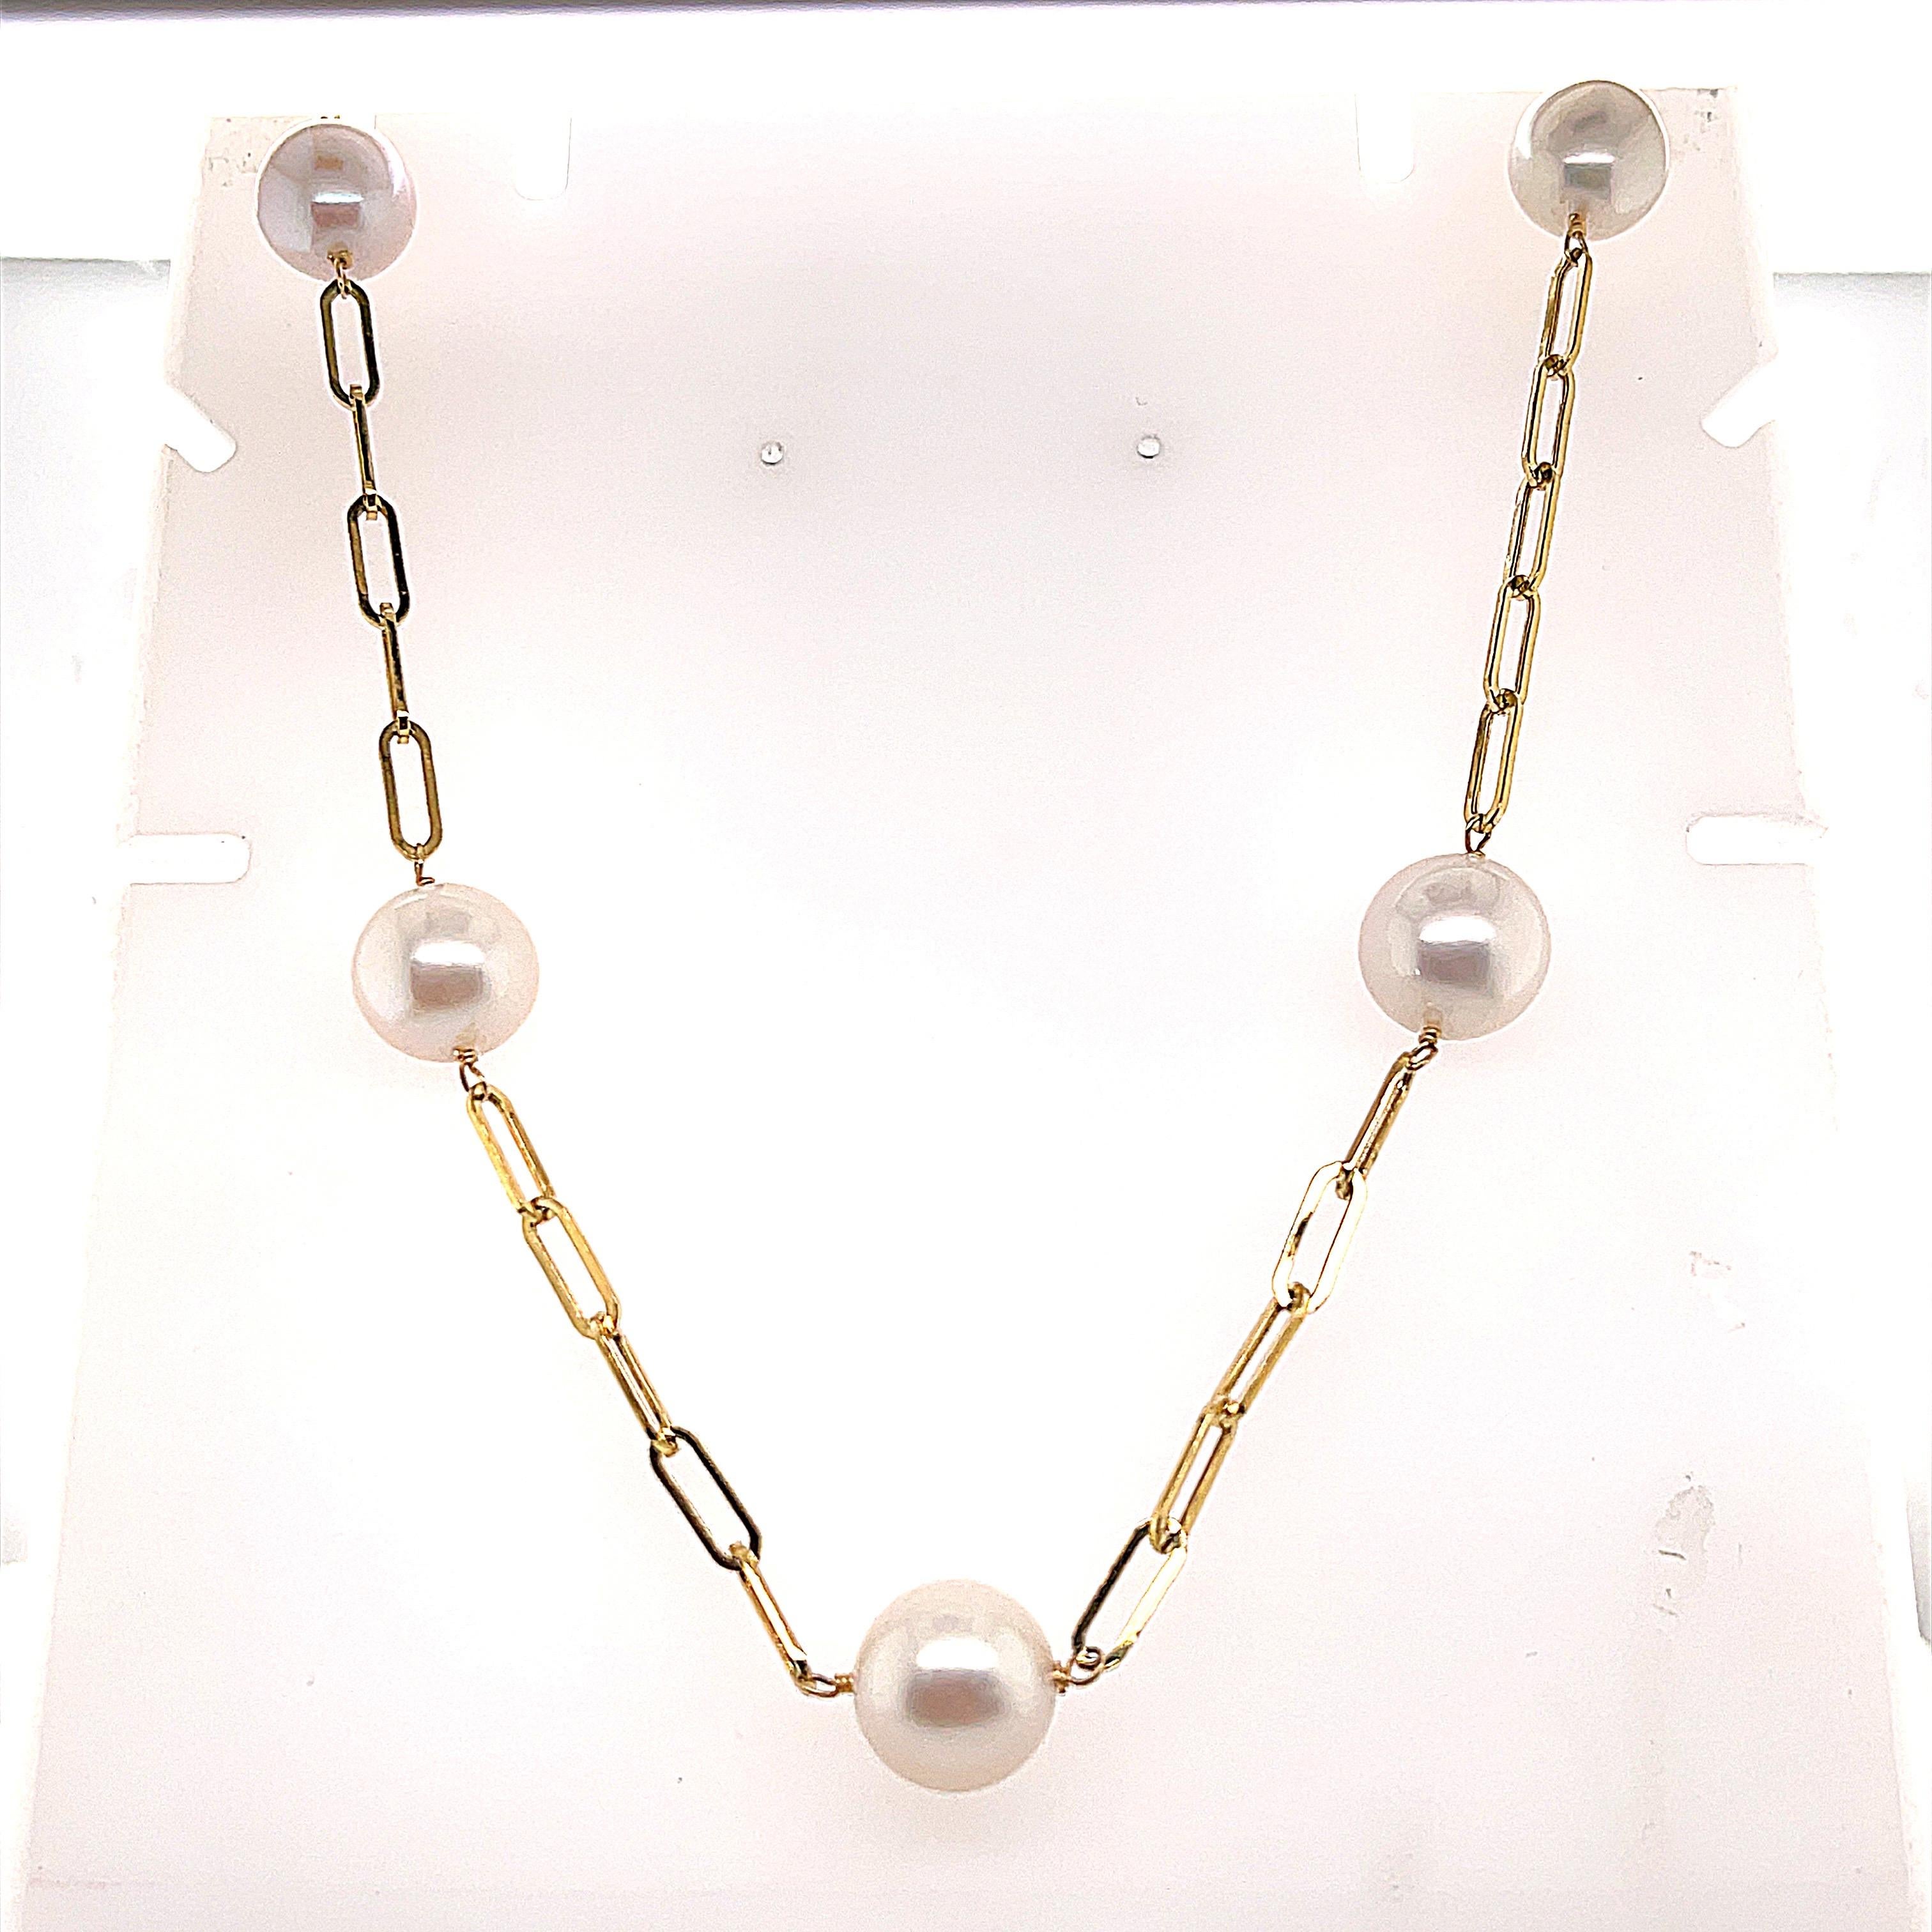 collier de trombones en or jaune 14K
Perle de culture d'eau douce blanche 10.50-11.50mm 
Fermoir en forme de homard
collier de 18